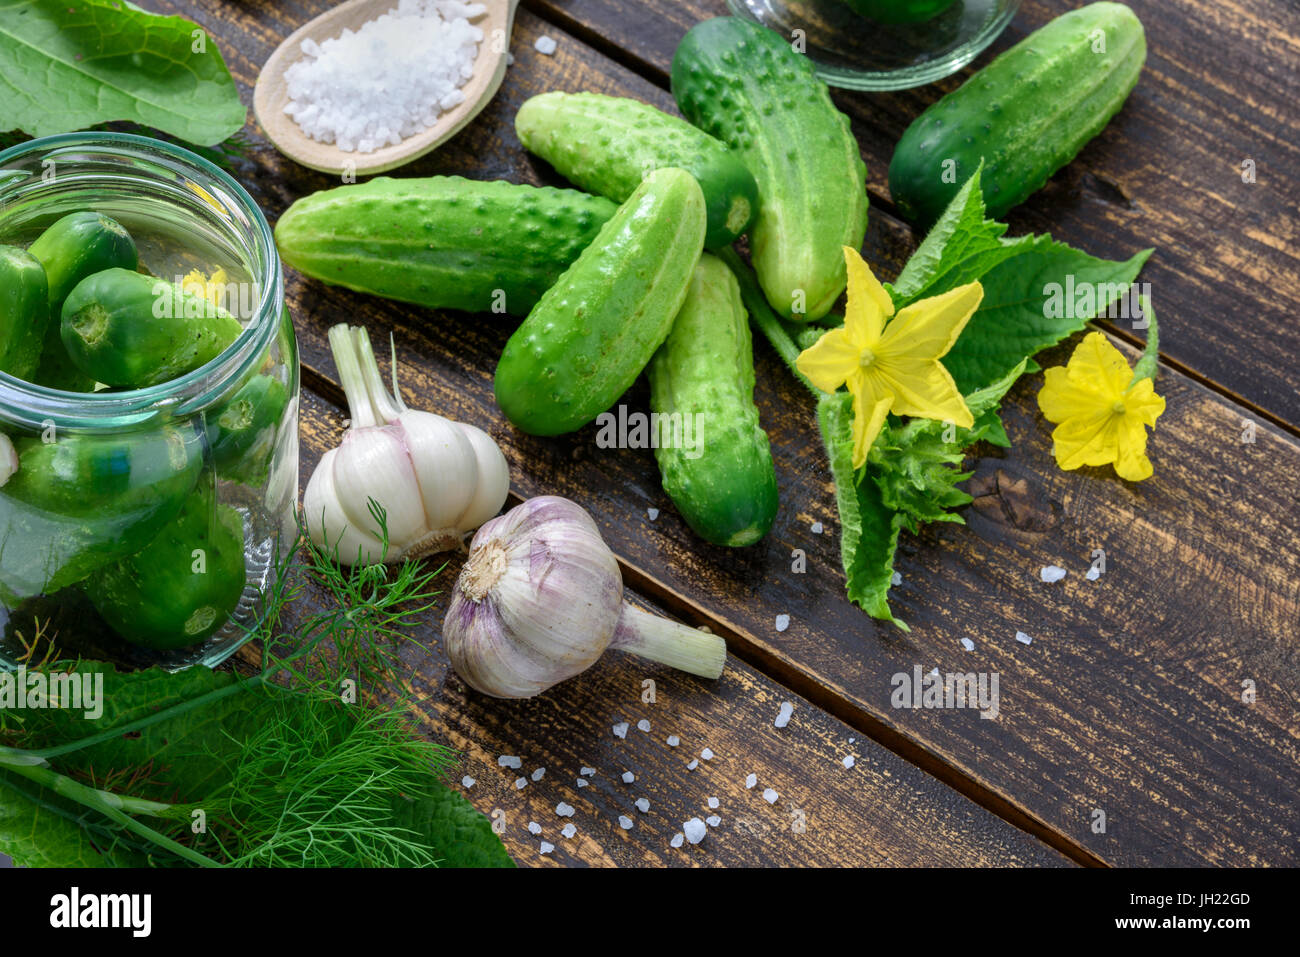 Le concept d'ingrédients des conserves maison - pots de concombres sur une table en bois à côté de la masse vert cru concombres, aneth, sel de mer, ga Banque D'Images